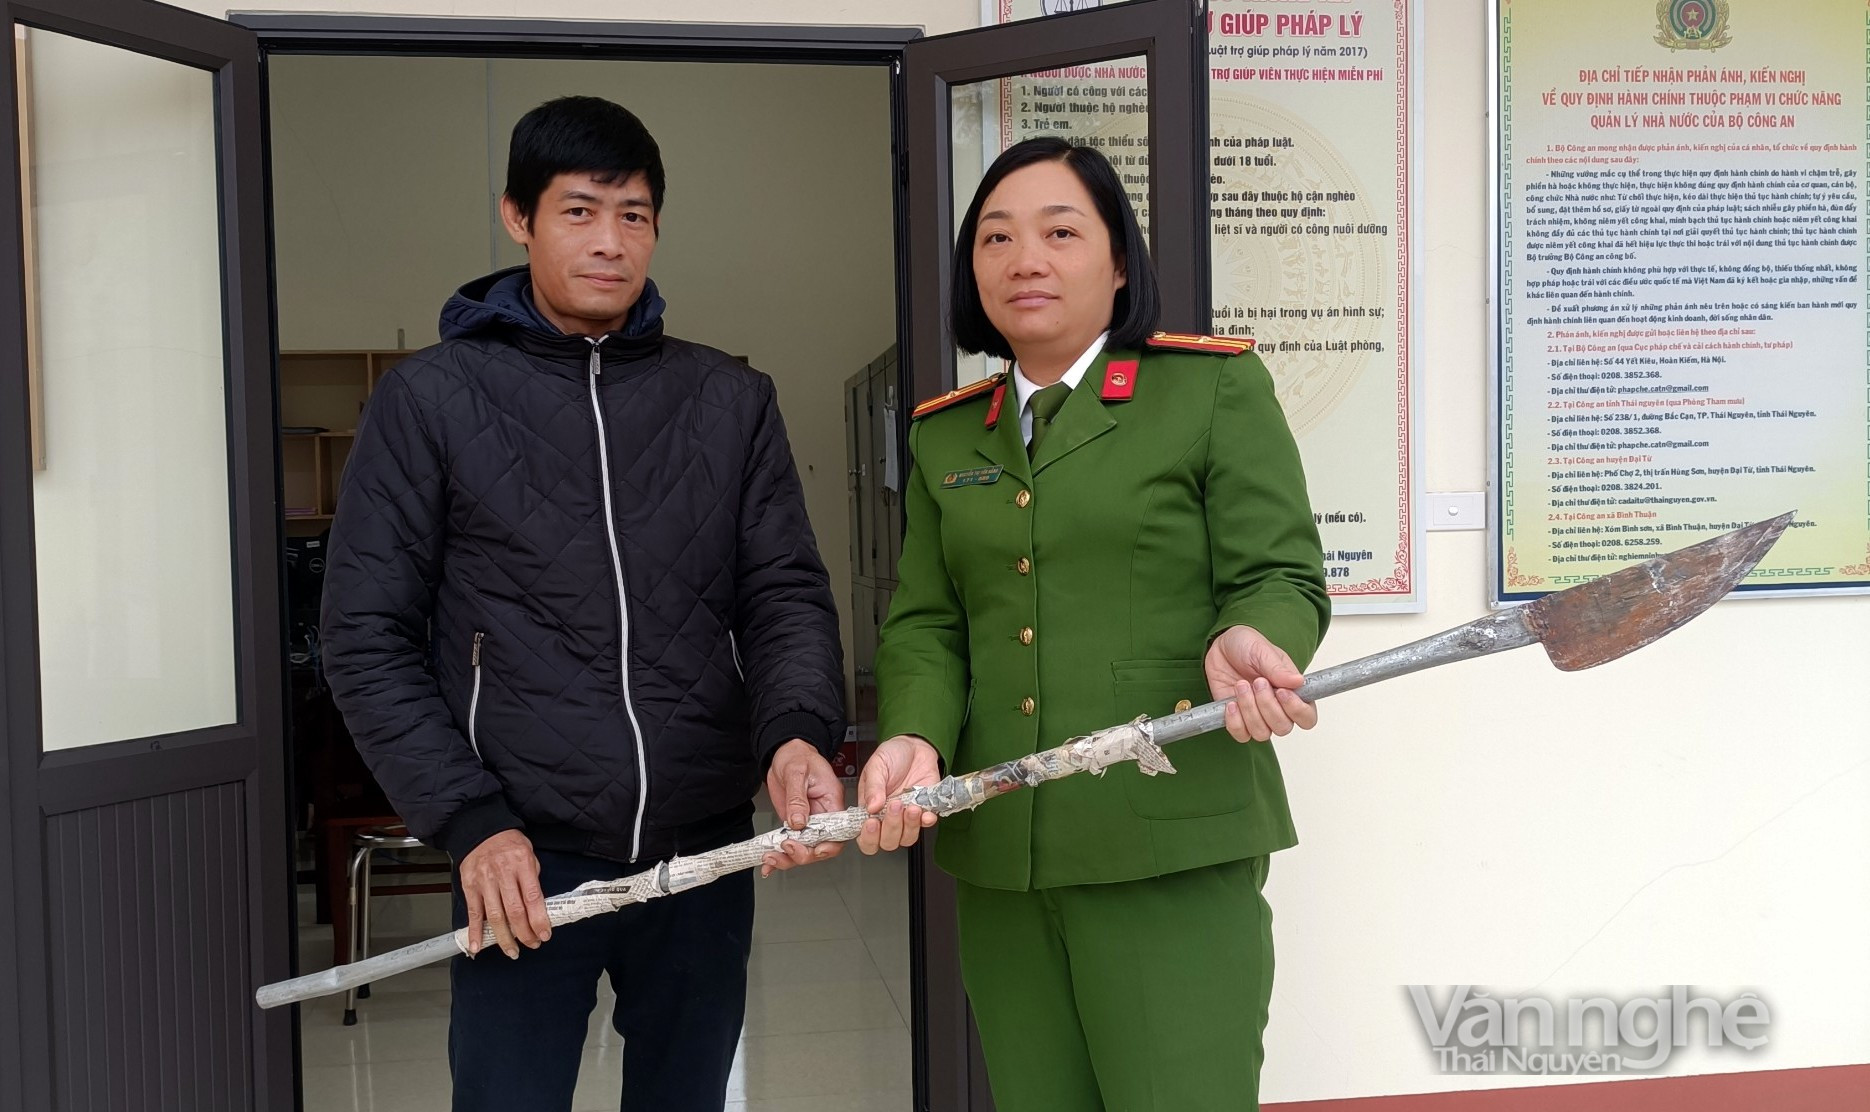 Thiếu tá Nguyễn Thị Yến Hằng vận động người dân trên địa bàn giao nộp vũ khí tự chế